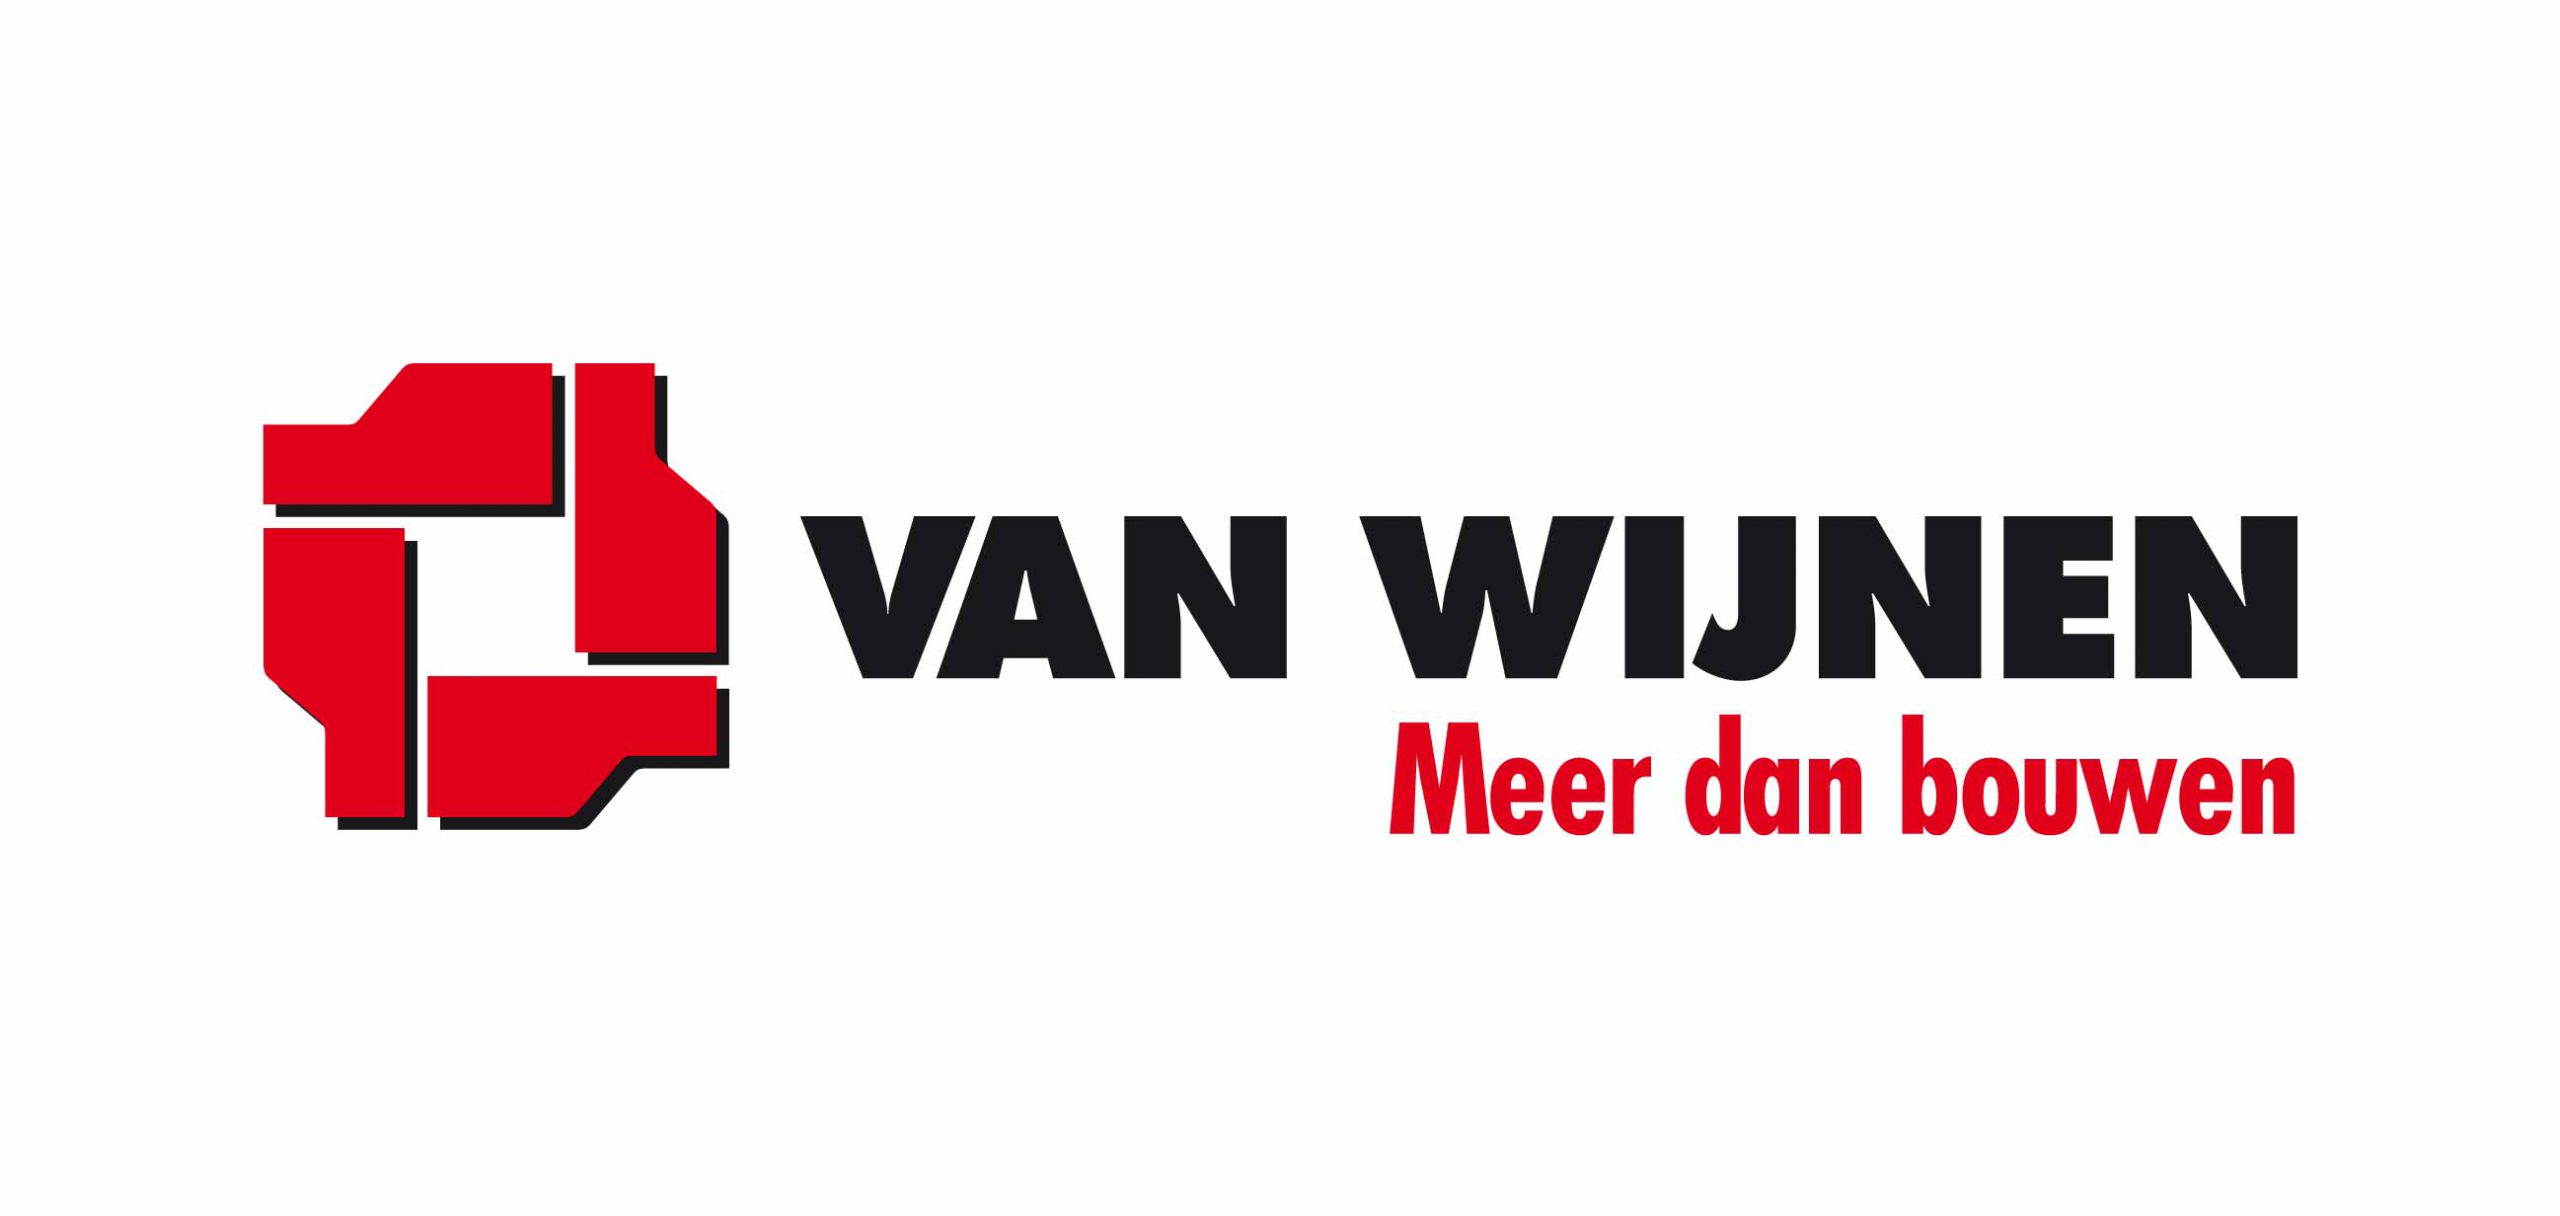 Van Wijnen 